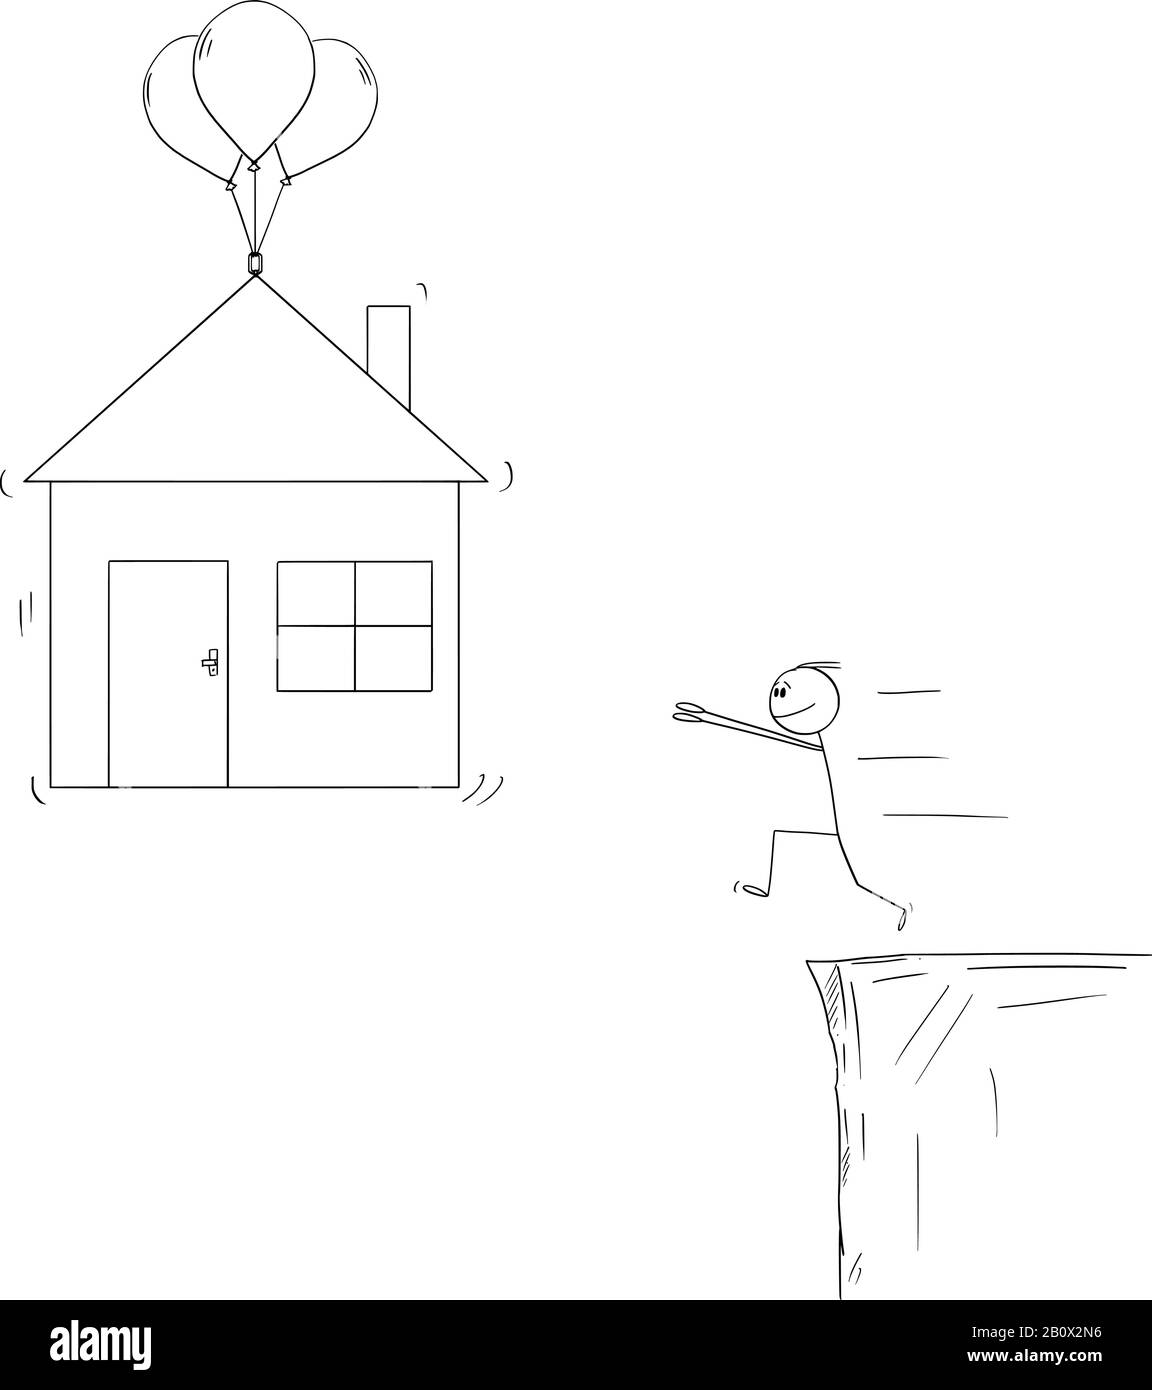 Vector Cartoon Stick Figur Zeichnung konzeptionelle Illustration des Mannes versucht, Hypotheken zu bekommen und ein Familienhaus zu kaufen, aber ist nicht in der Lage, es zu bekommen oder zu bezahlen. Stock Vektor